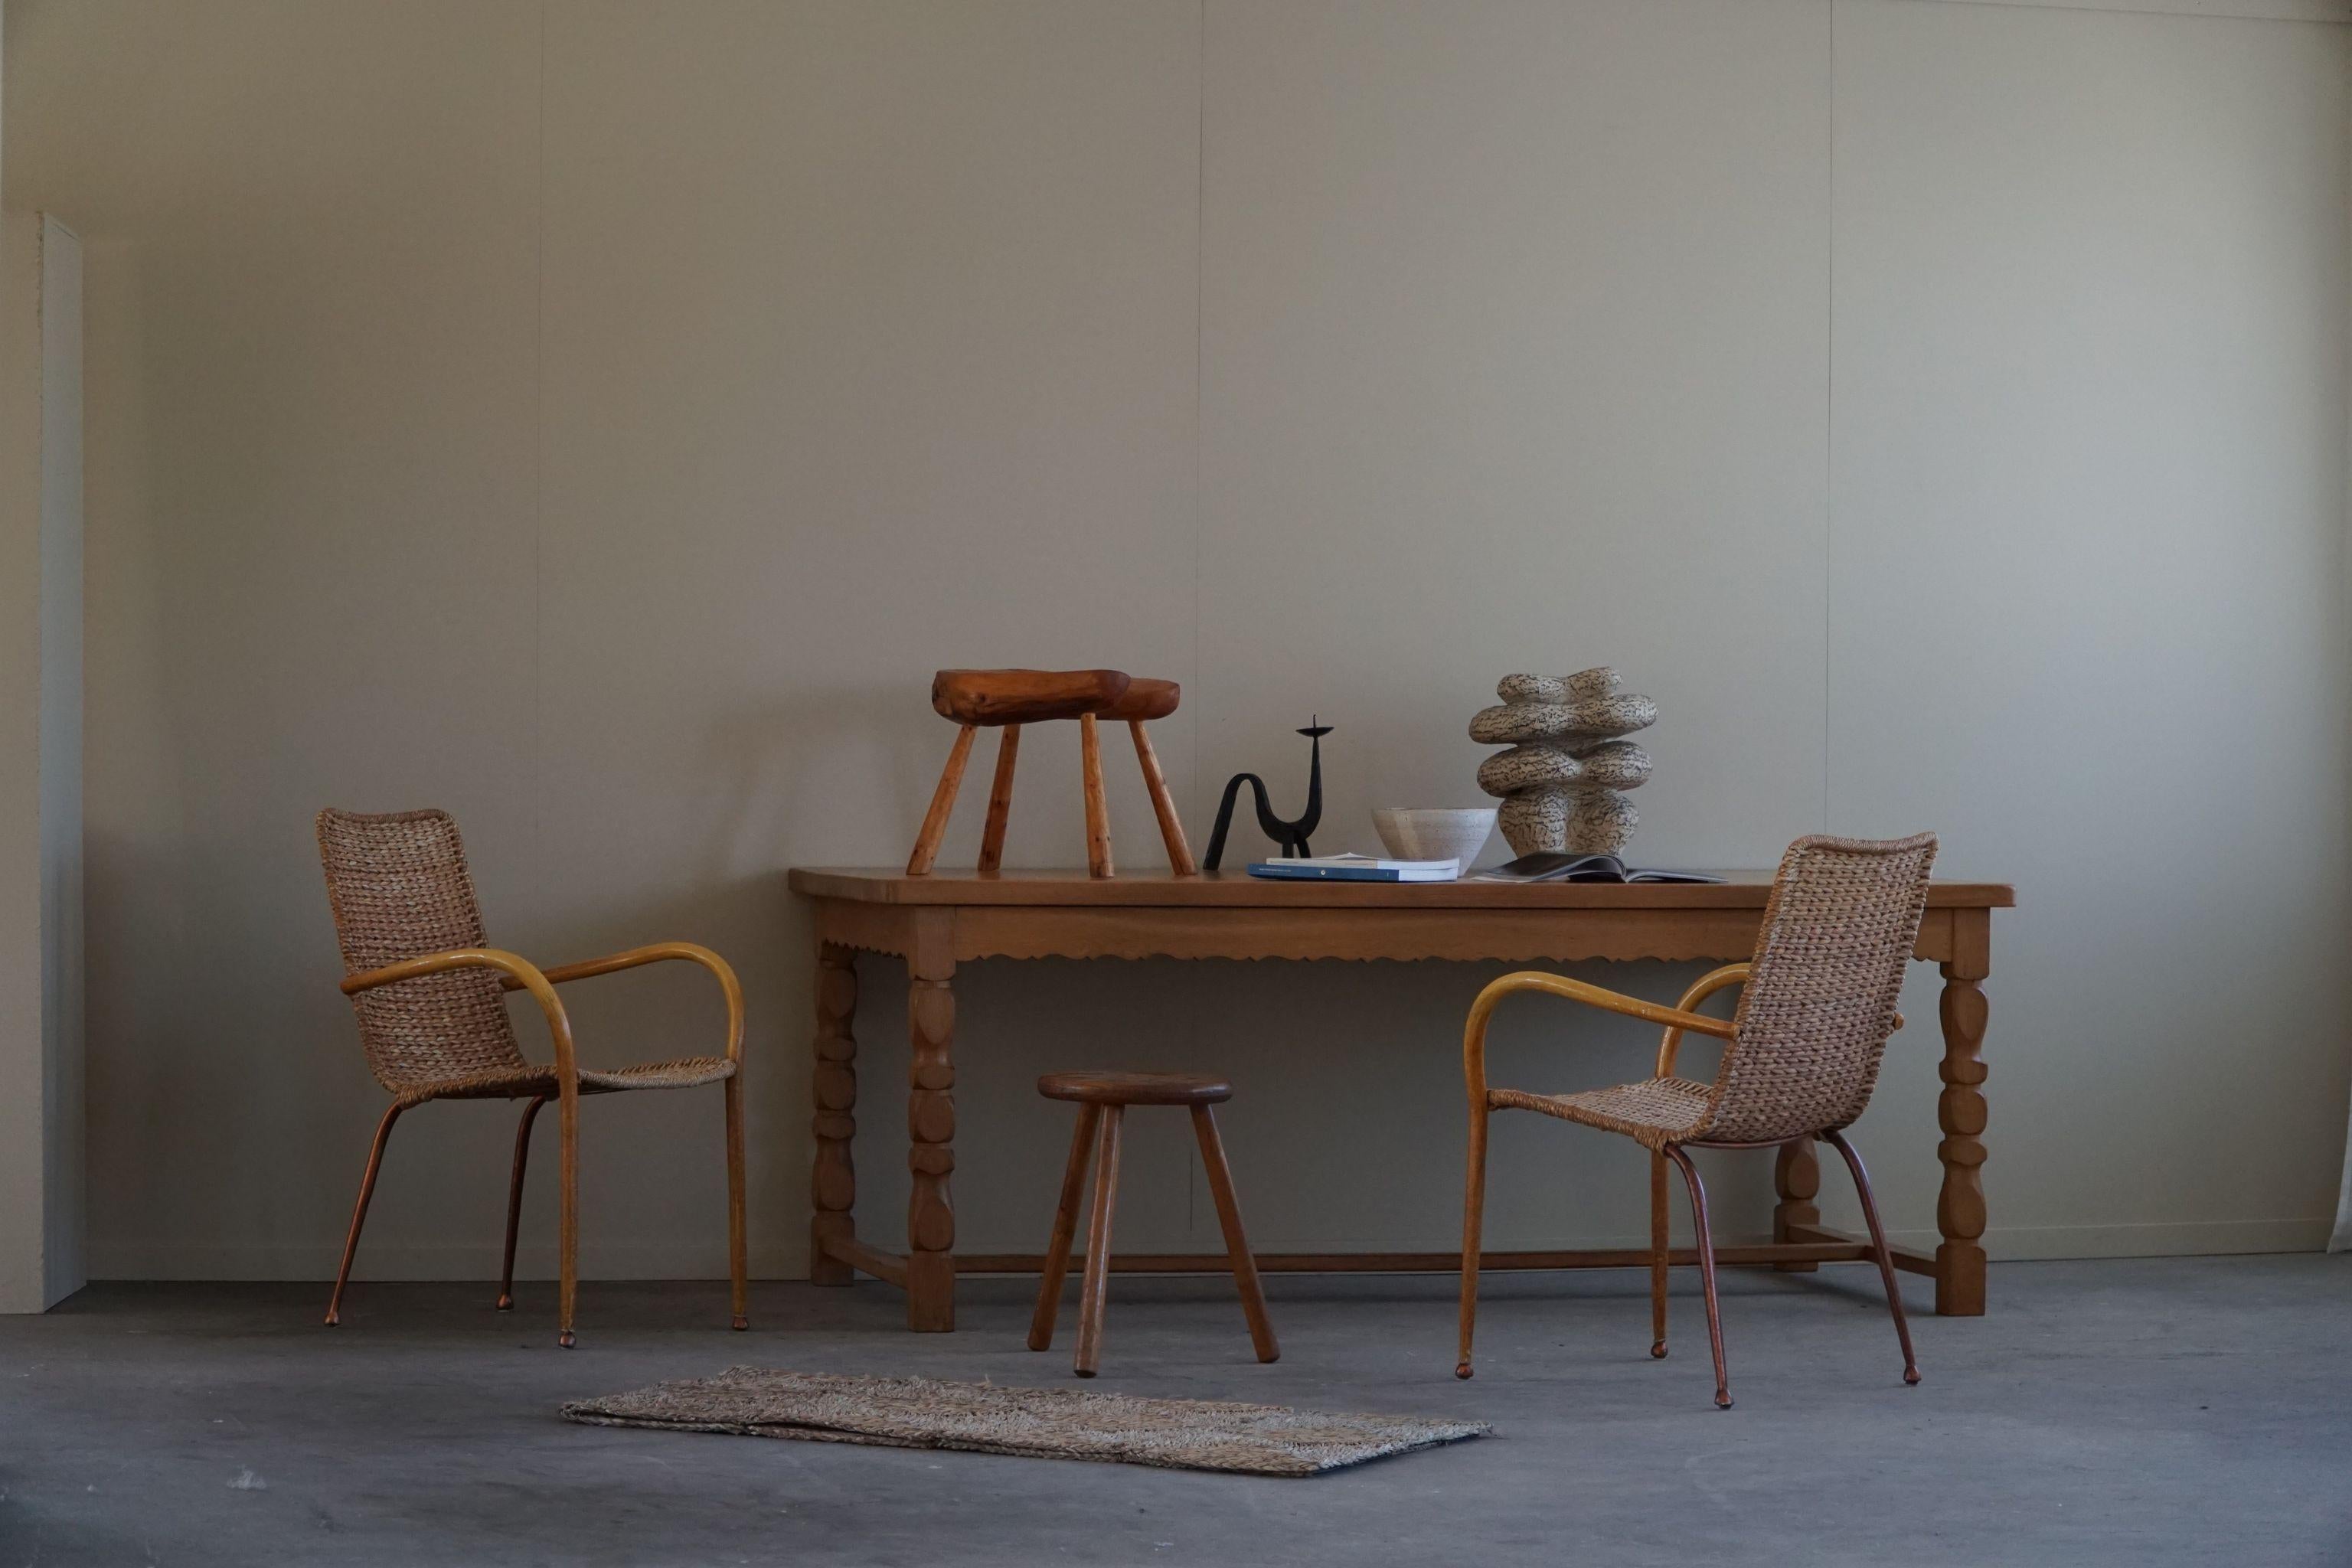 Wir stellen einen großen rechteckigen Tisch aus massiver Eiche vor, der in den 1950er Jahren von einem dänischen Tischler gefertigt wurde. Dieses außergewöhnliche Stück verbindet die Eleganz des dänischen Designs mit den kunstvollen Details der